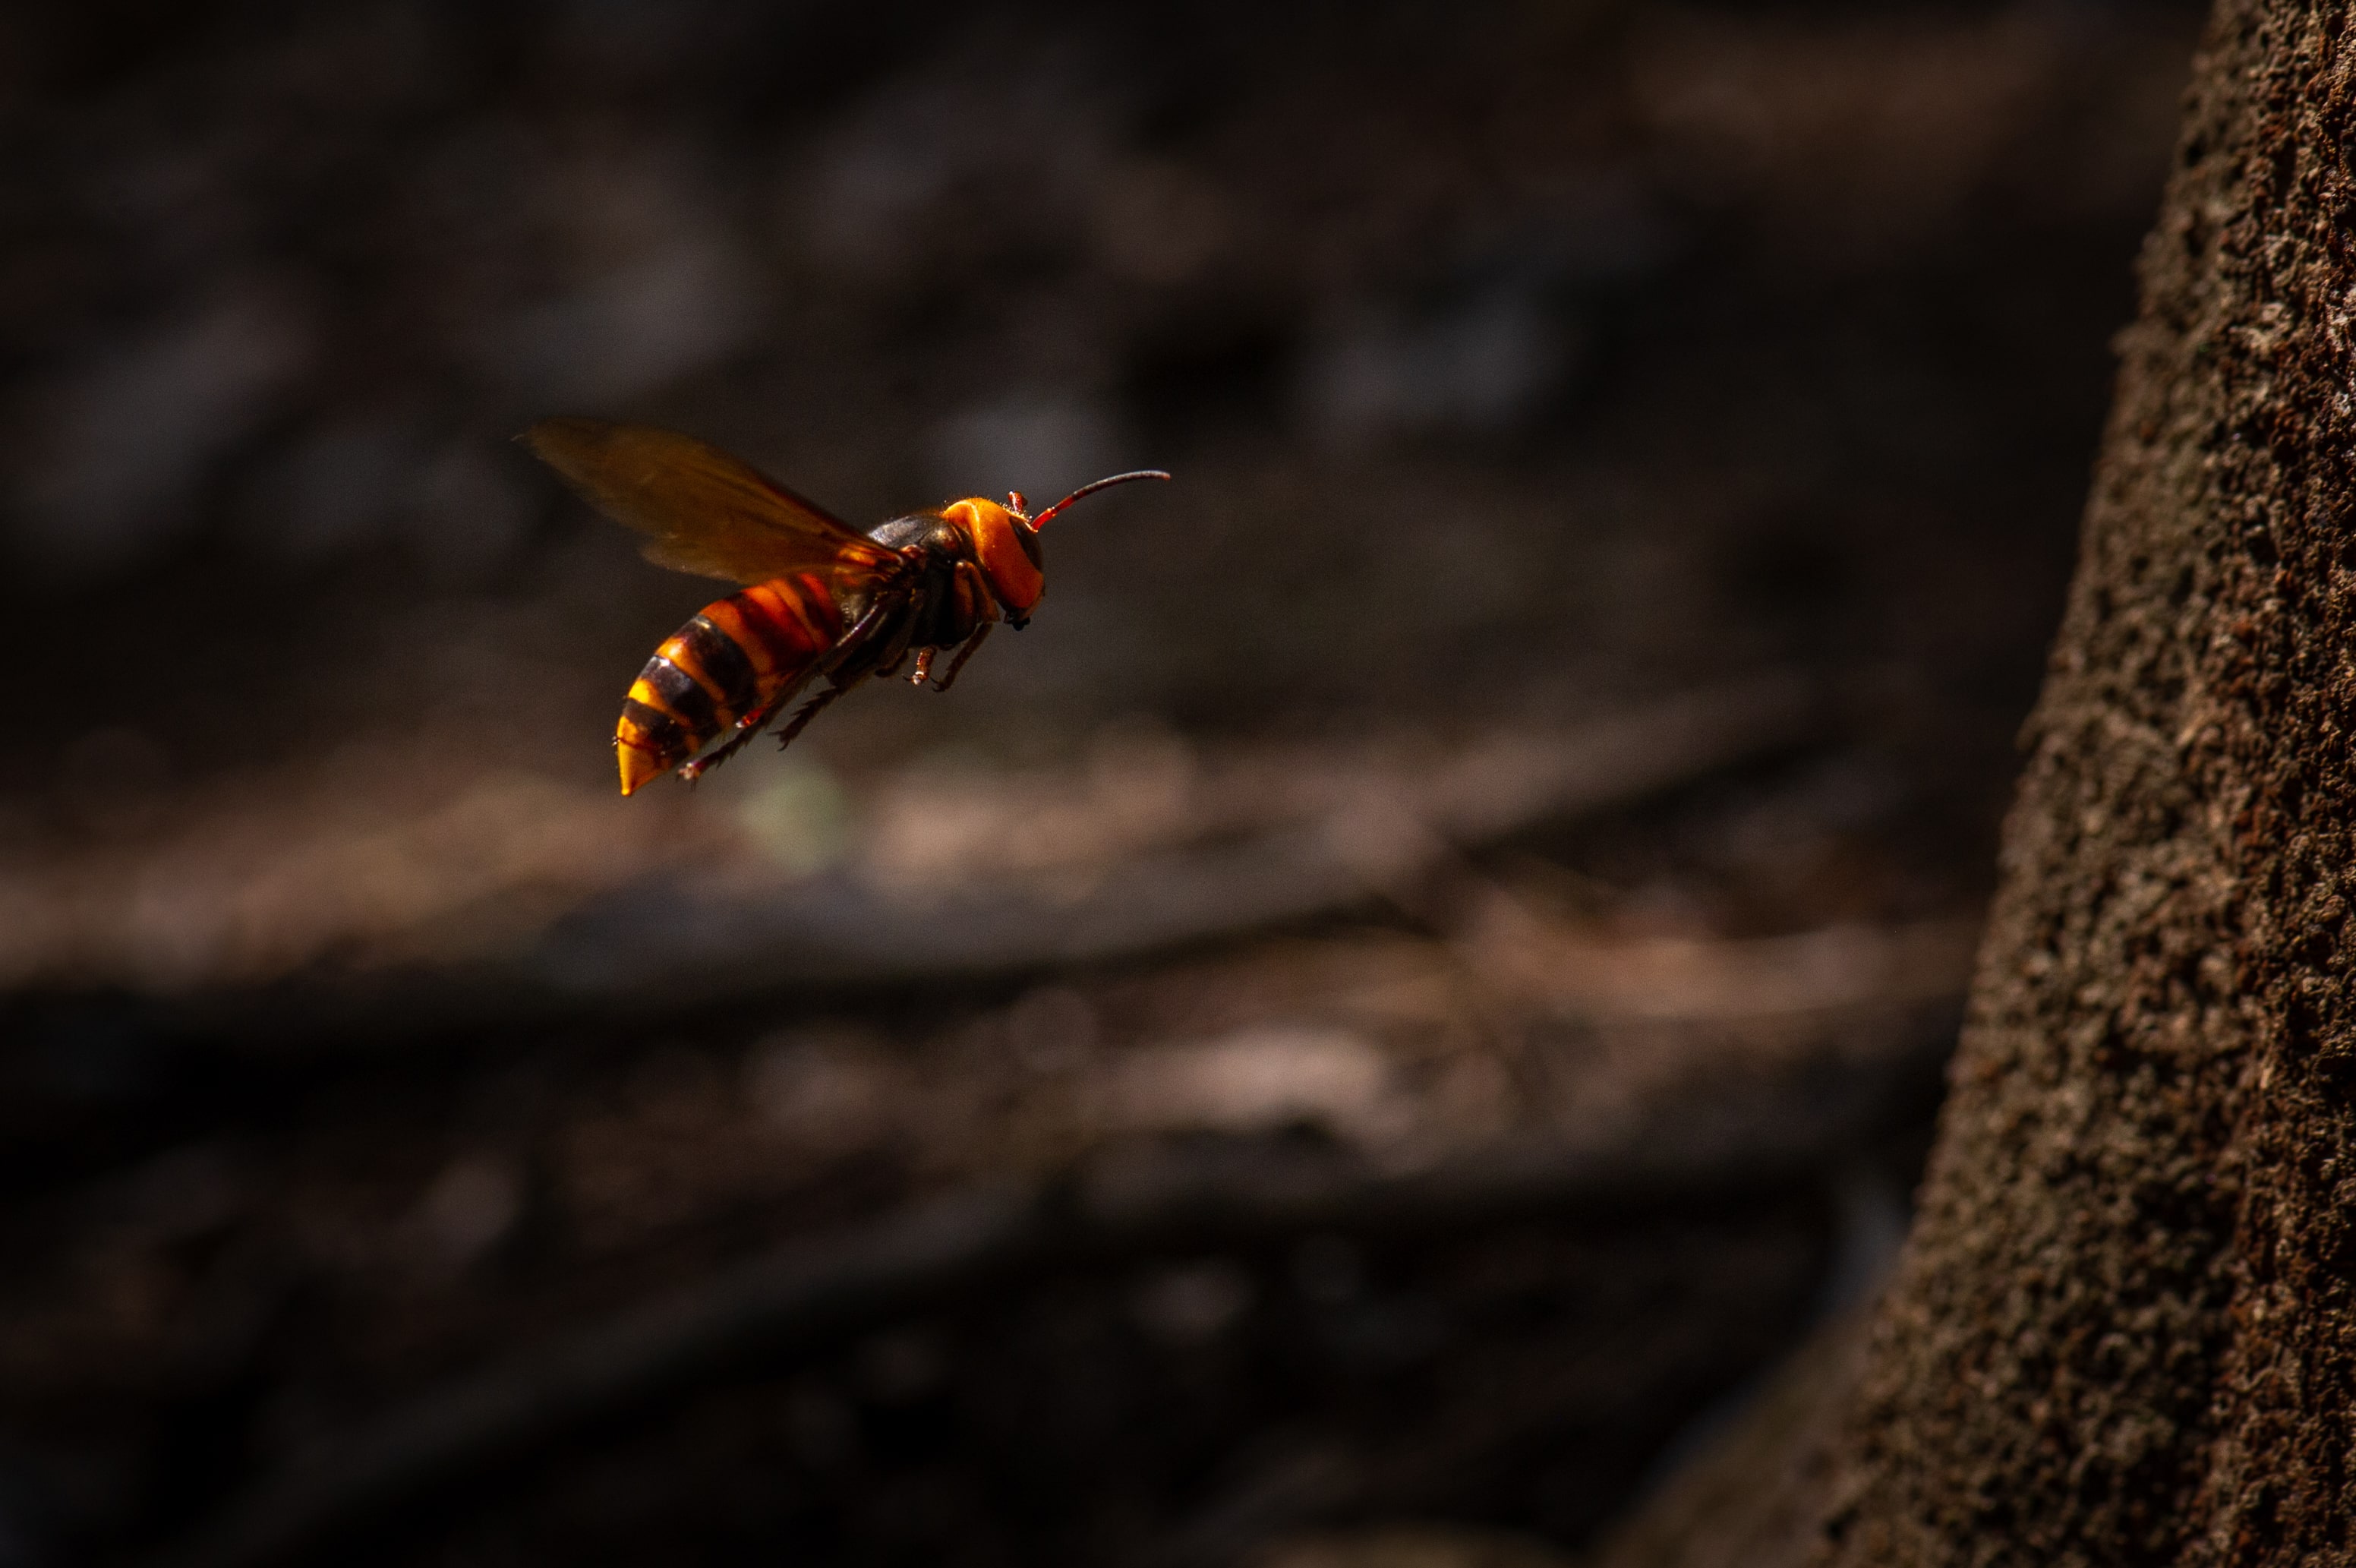 オオスズメバチ 虫の写真と生態なら昆虫写真図鑑 ムシミル